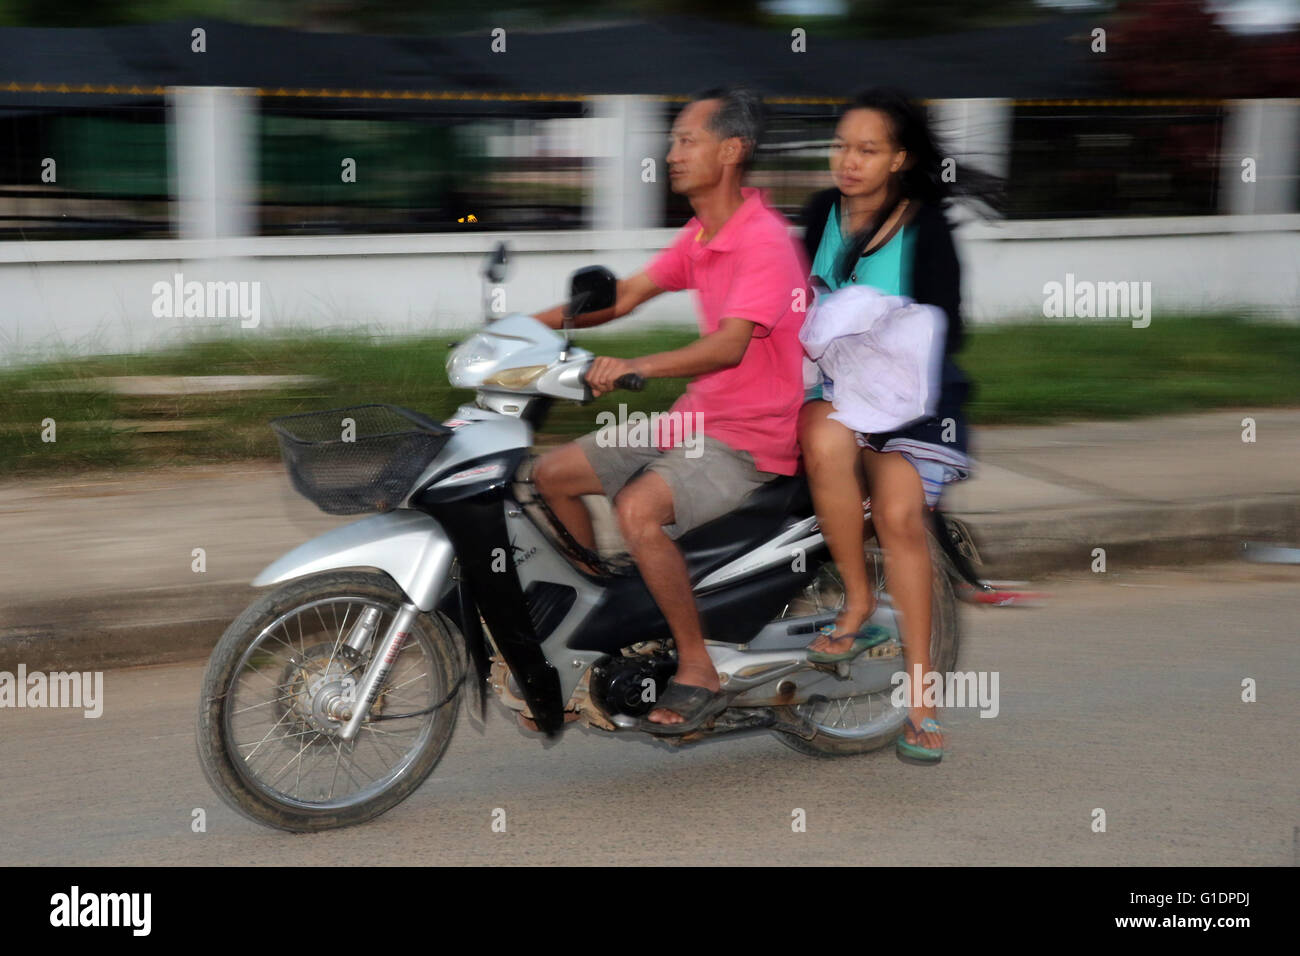 La province de Vientiane. Moto sur la route. Vang Vieng. Le Laos. Banque D'Images